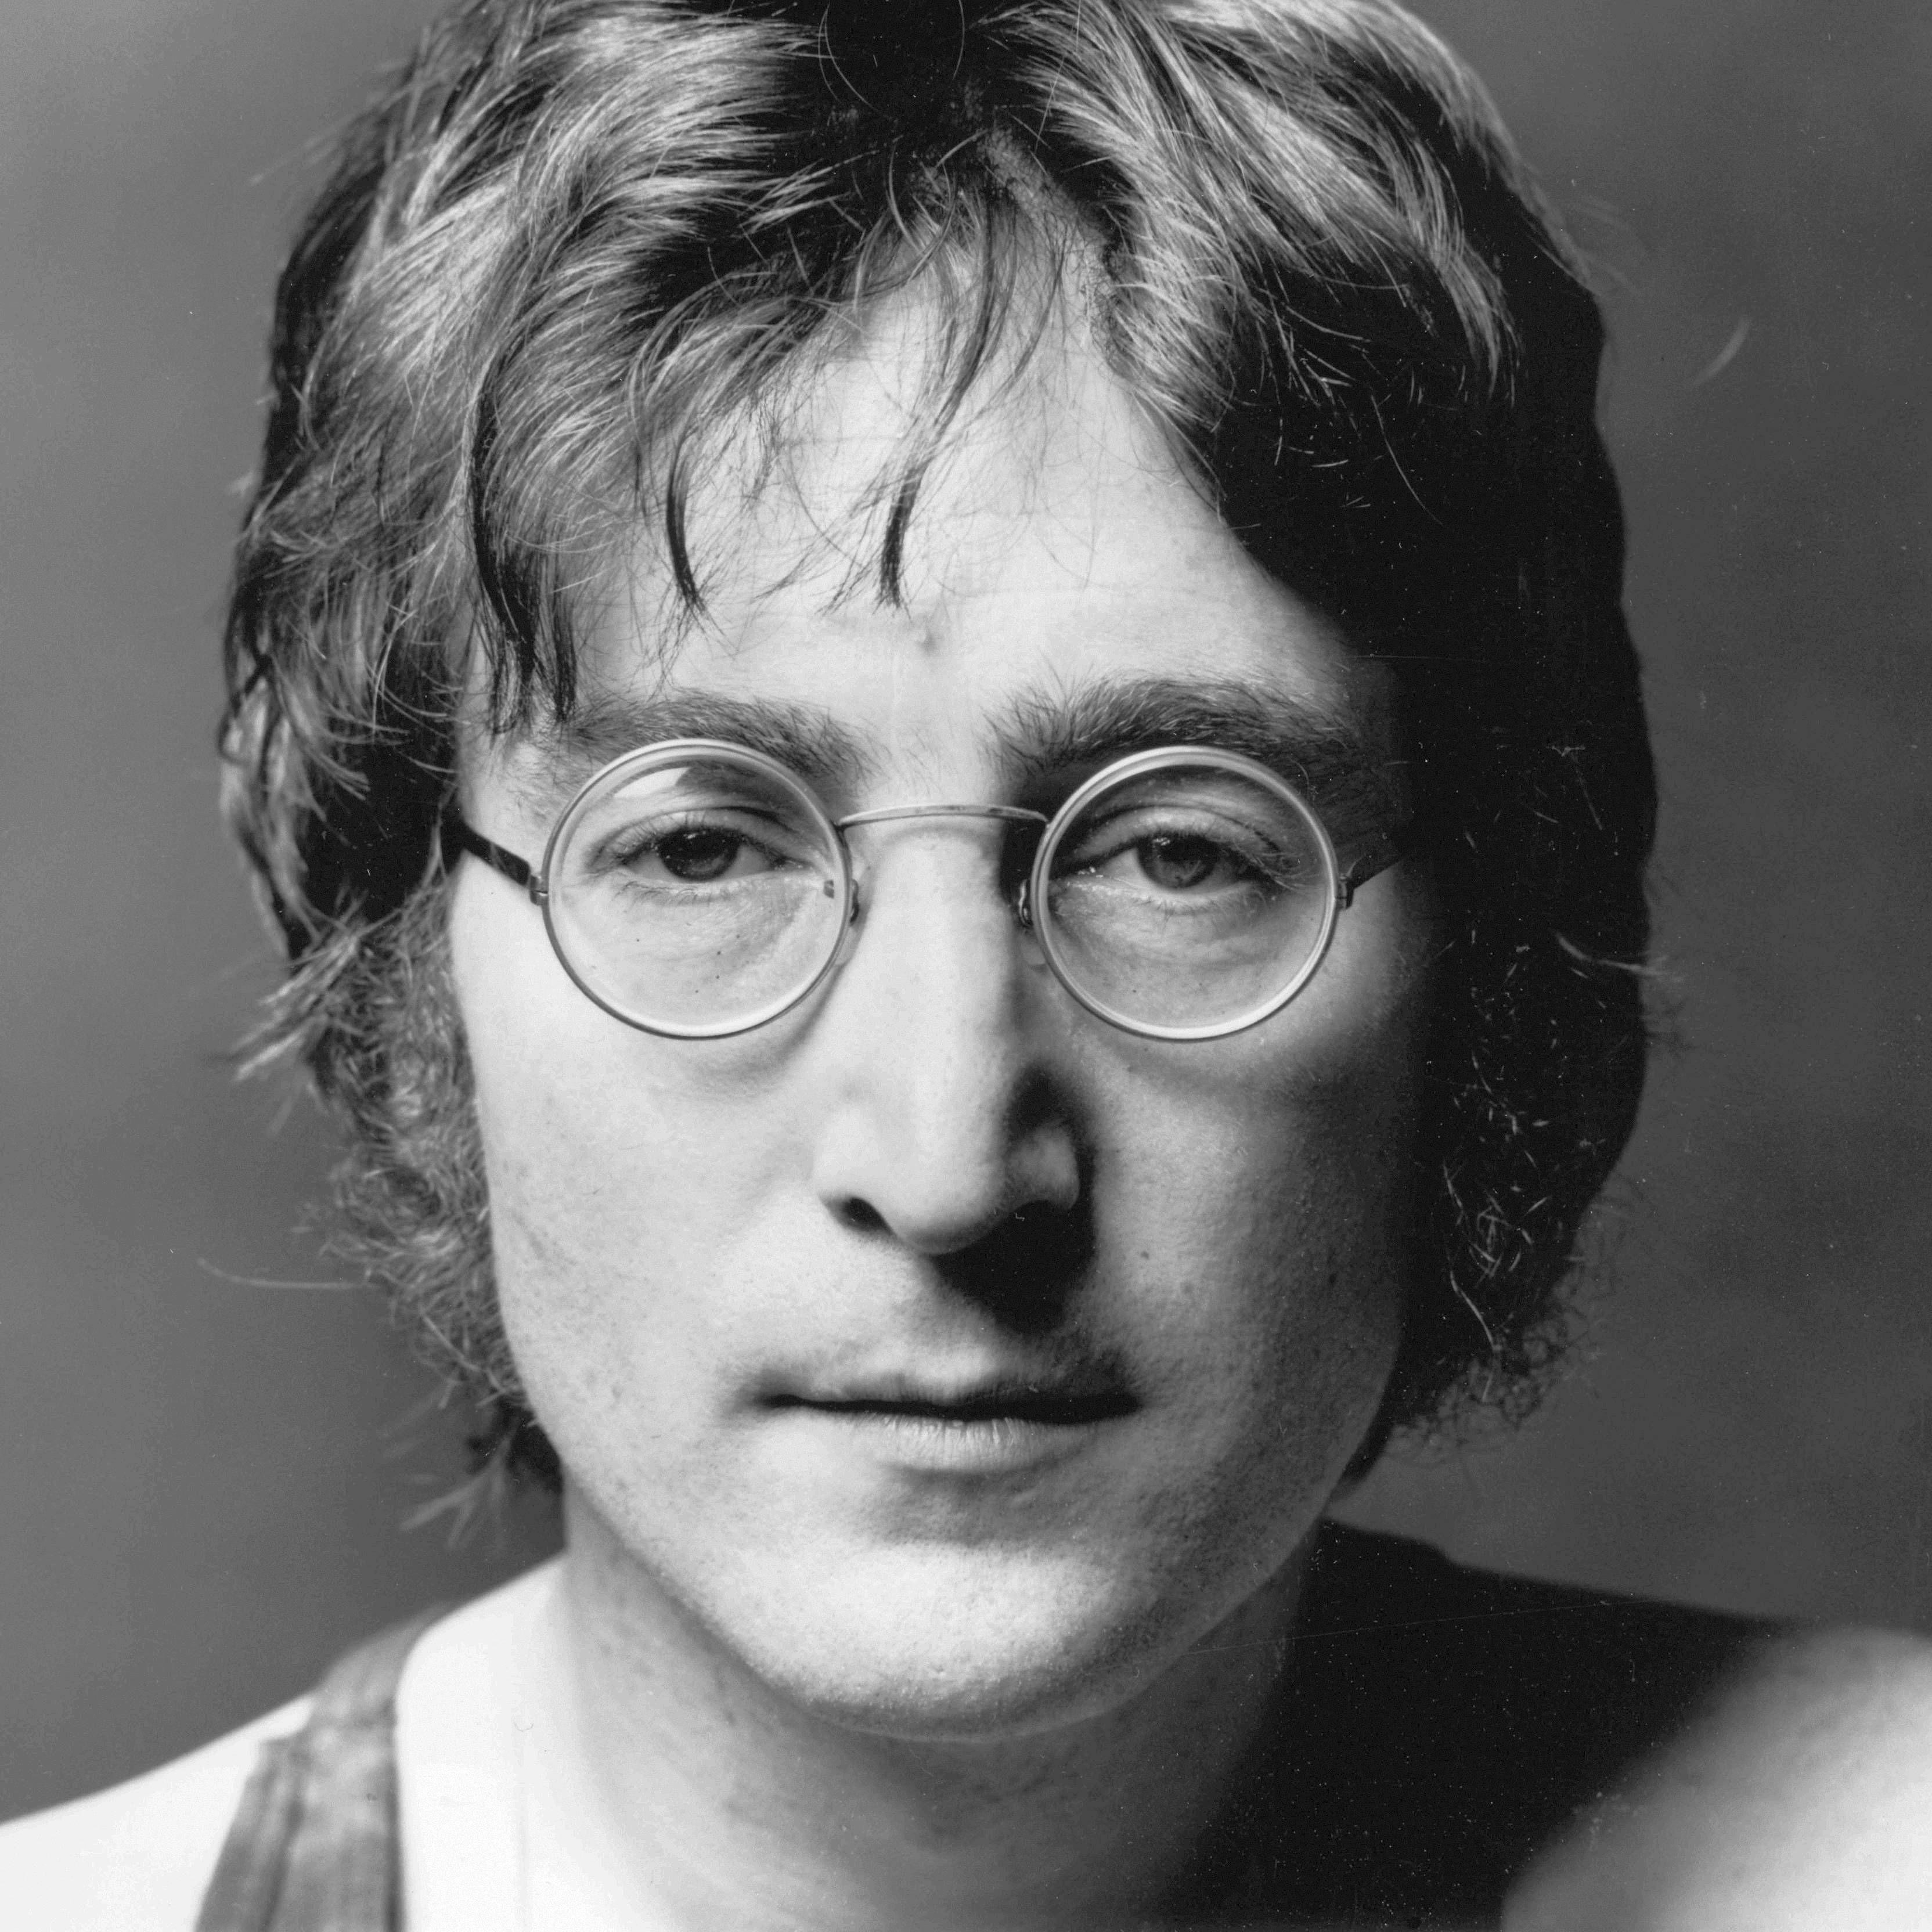 John Lennon Wallpaper